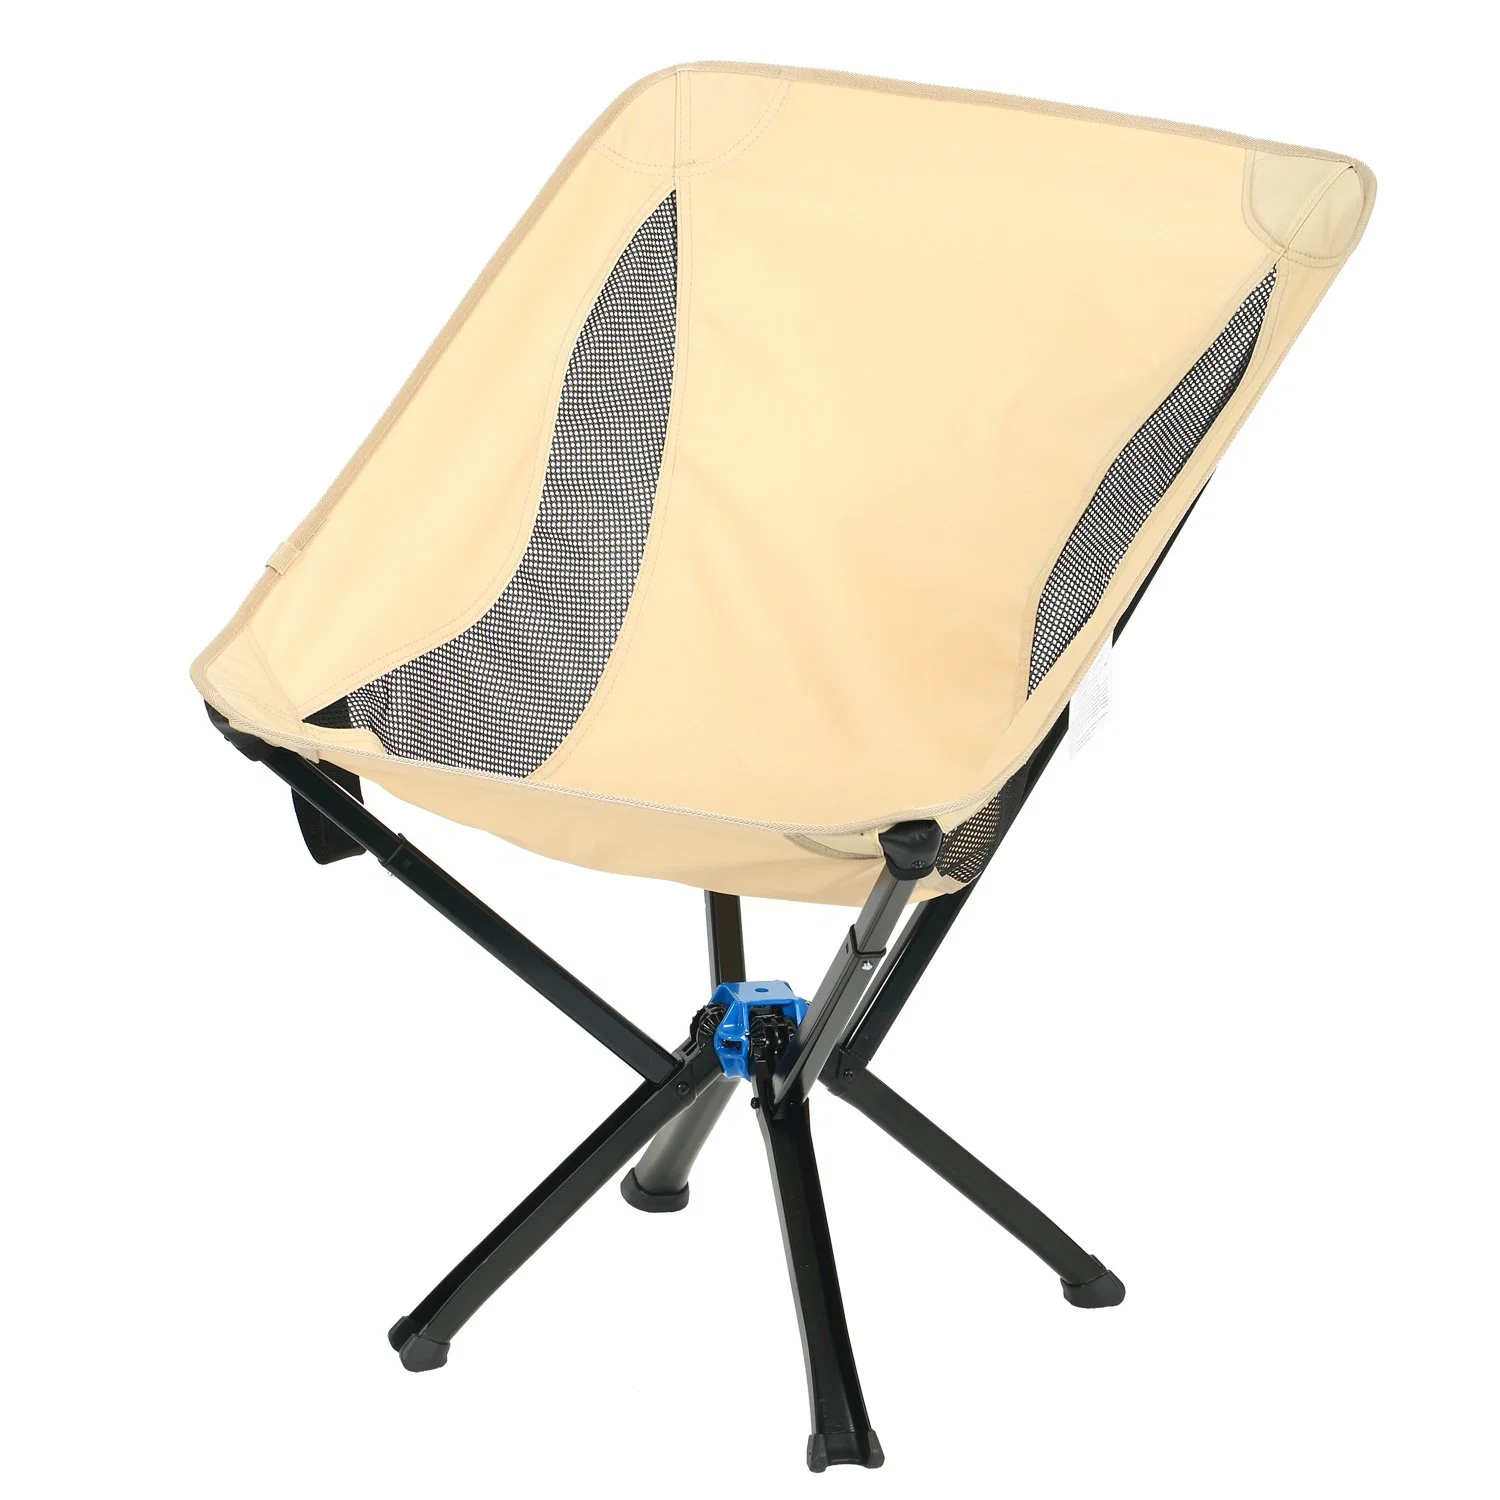 Стул с каплеем в любом месте небольшой размер - переносной универсальный складной стул для взрослых.